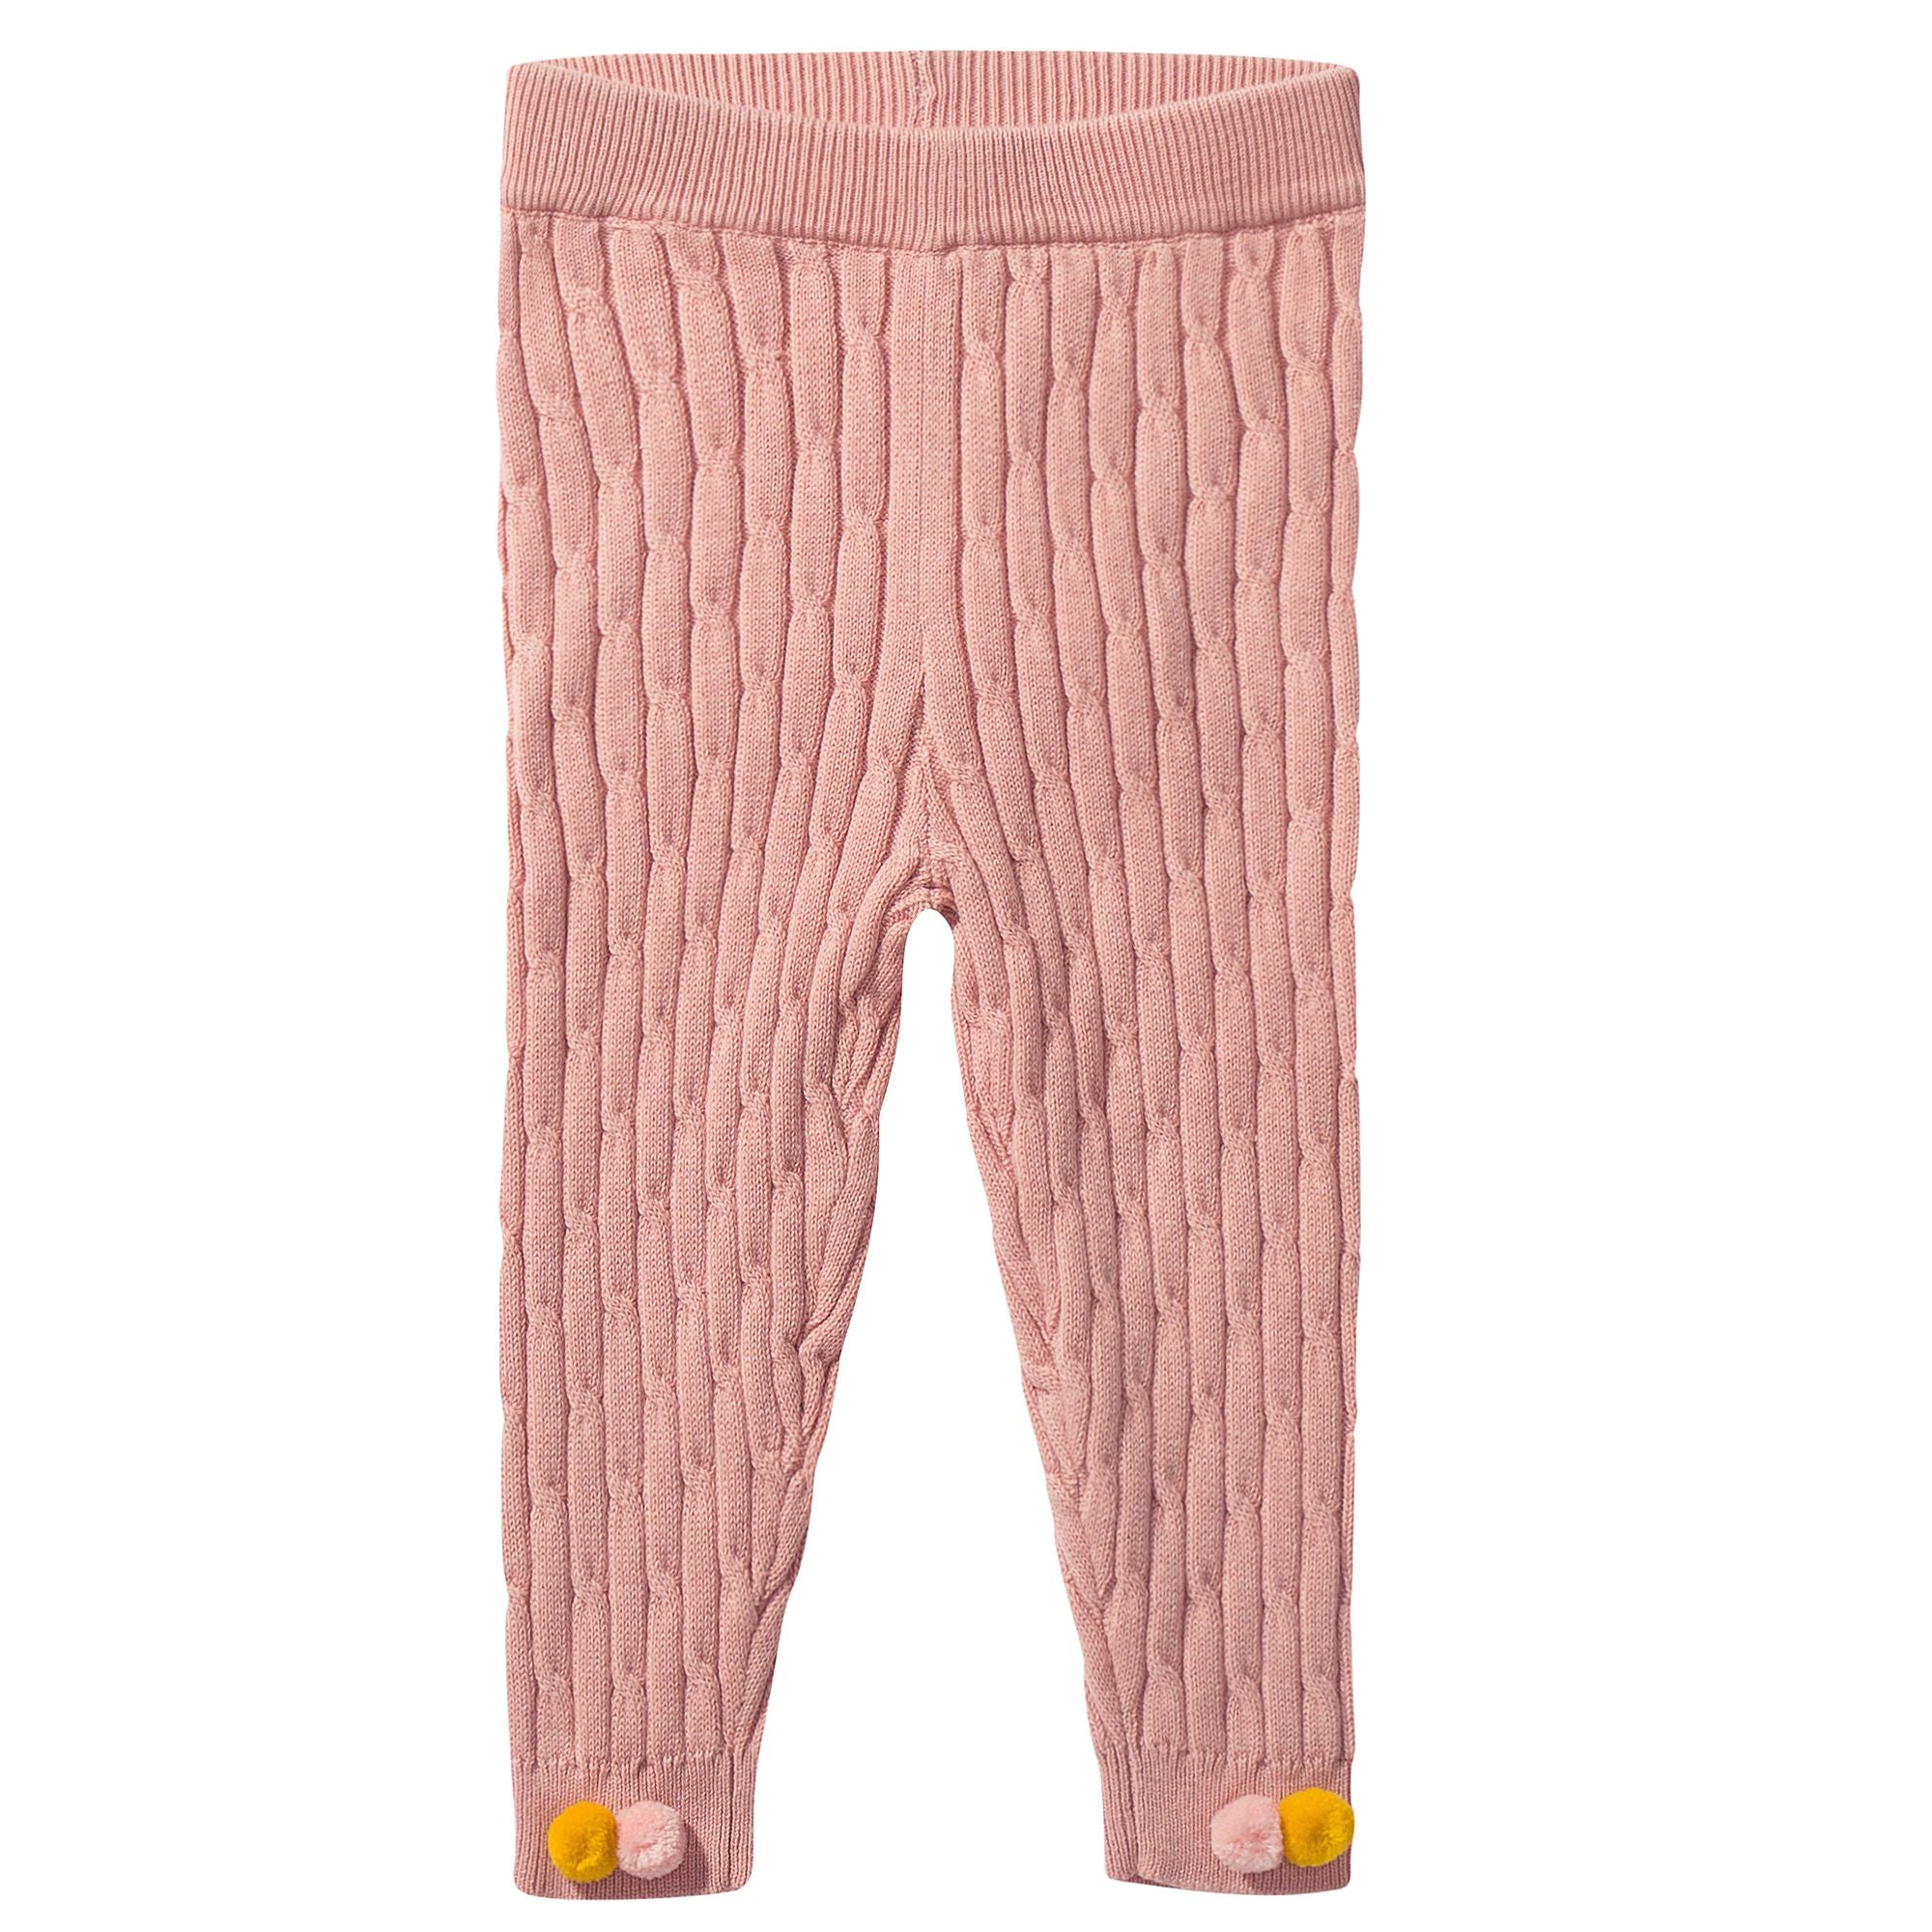 Girls Pink Cotton Leggings